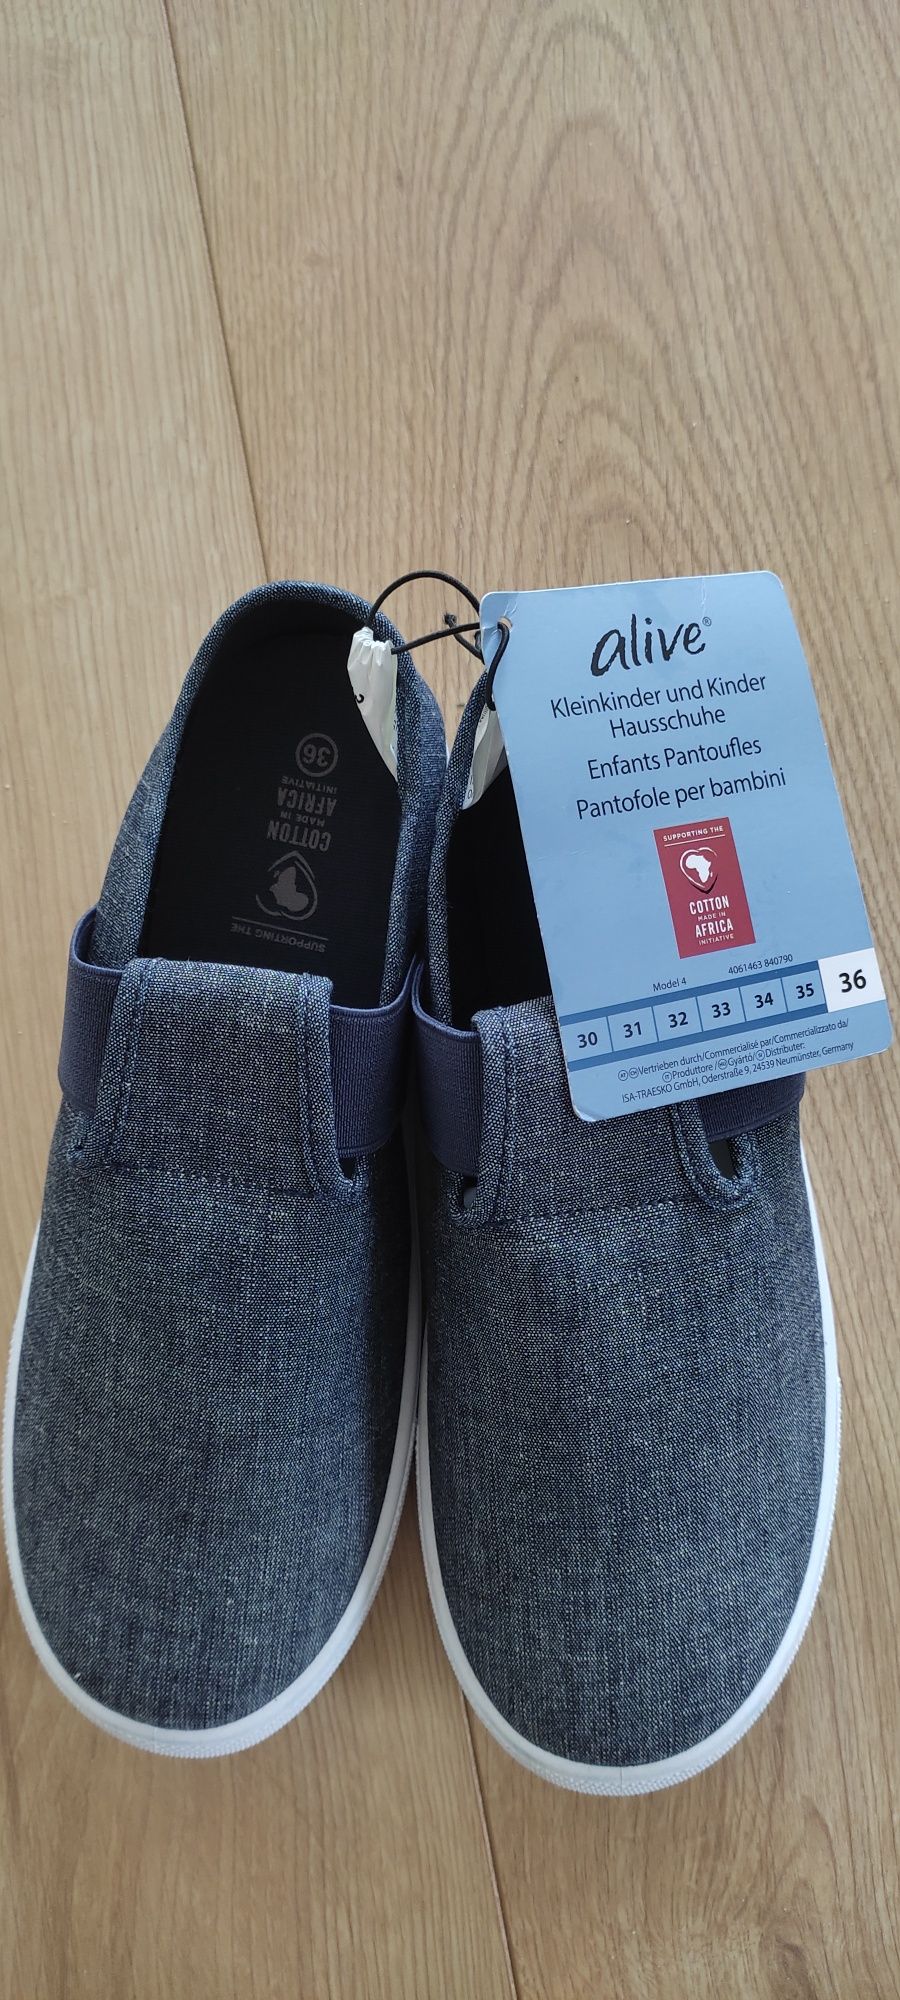 Pantofle trampki 36 buty buciki NOWE firmy niemieckiej super jakość